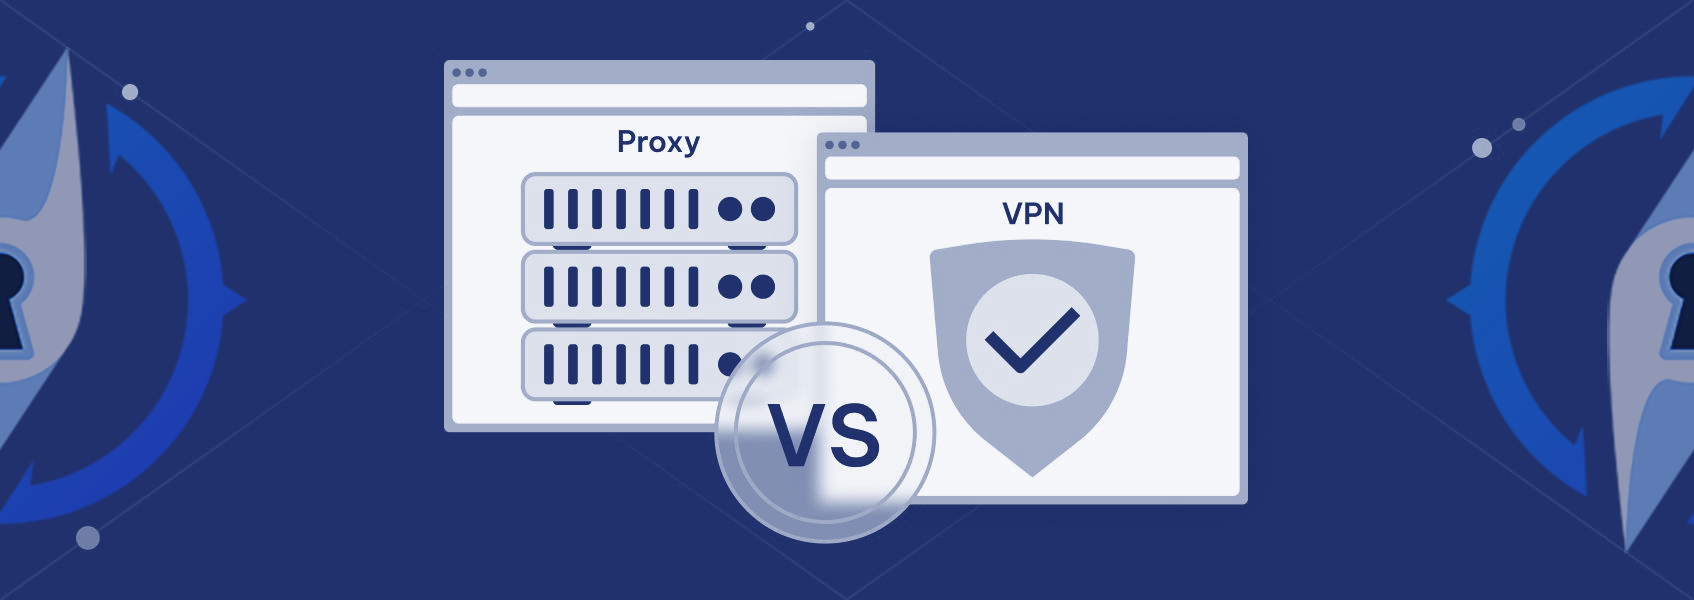 Decifrare le differenze: proxy e VPN